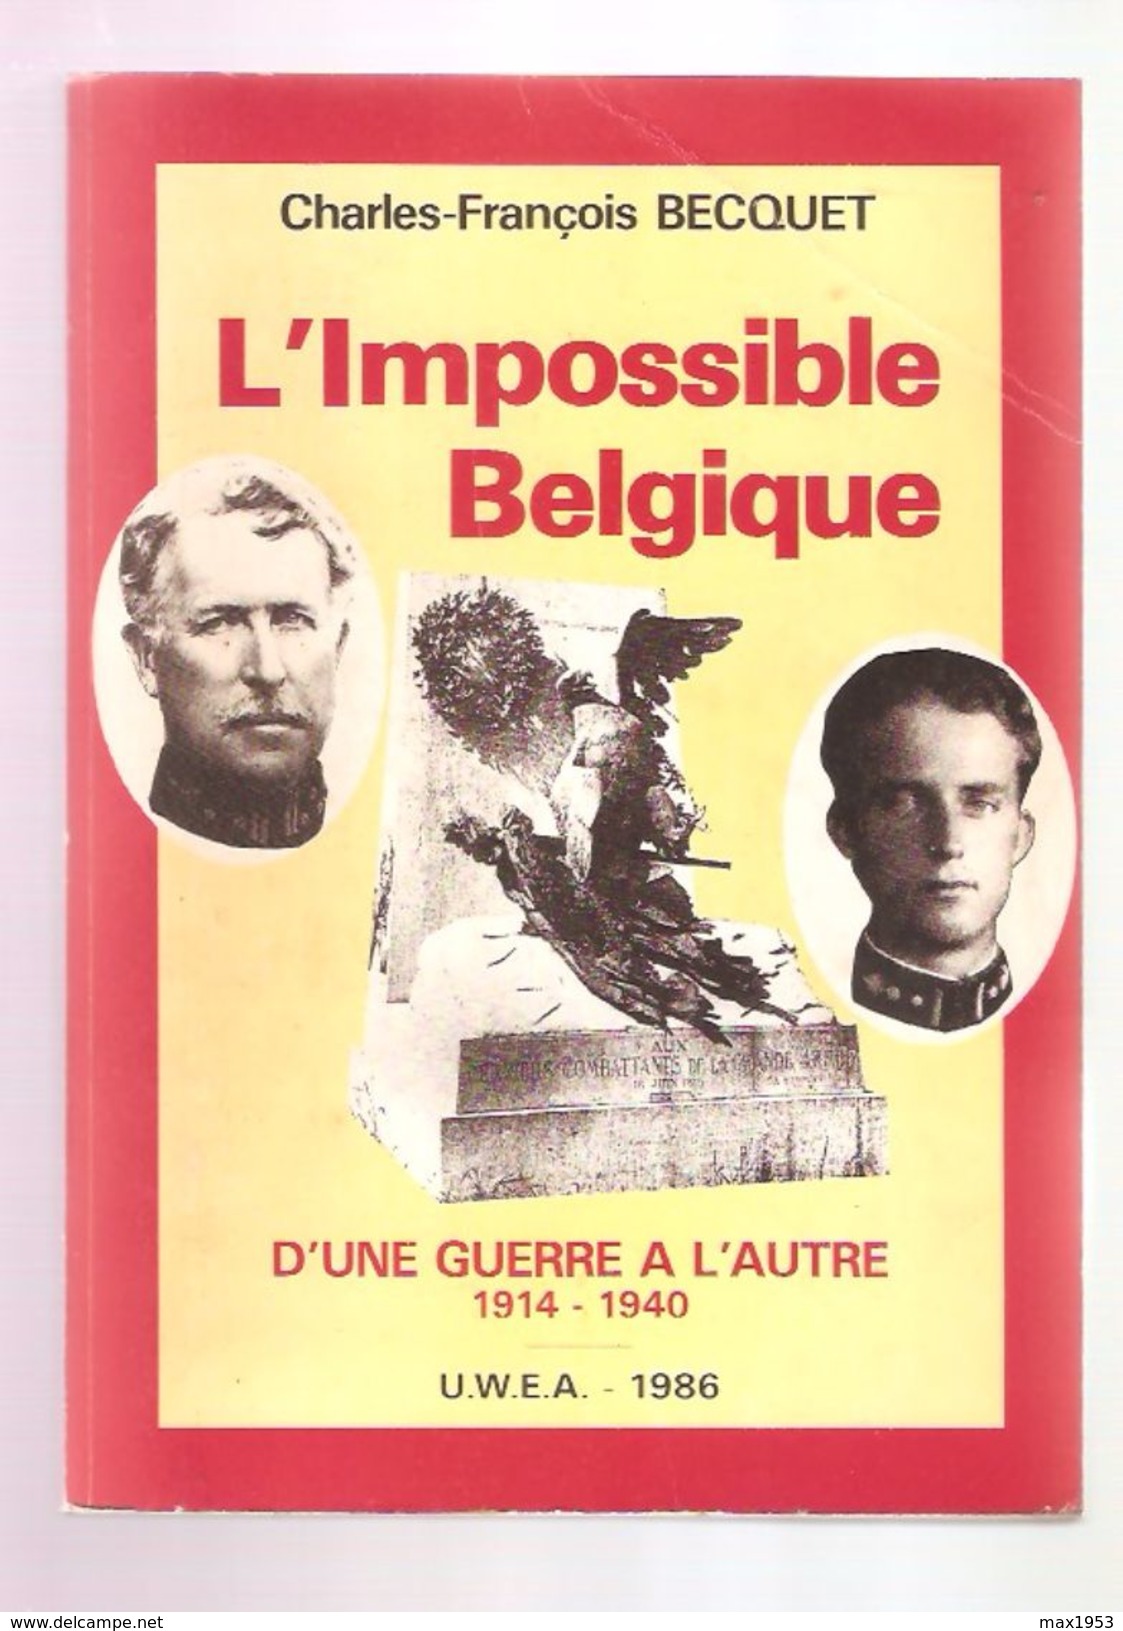 Charles-François BECQUET - L'IMPOSSIBLE BELGIQUE - D'UNE GUERRE A L'AUTRE 1914-1940 - U.W.E.A. Bruxelles 1986 - Belgique